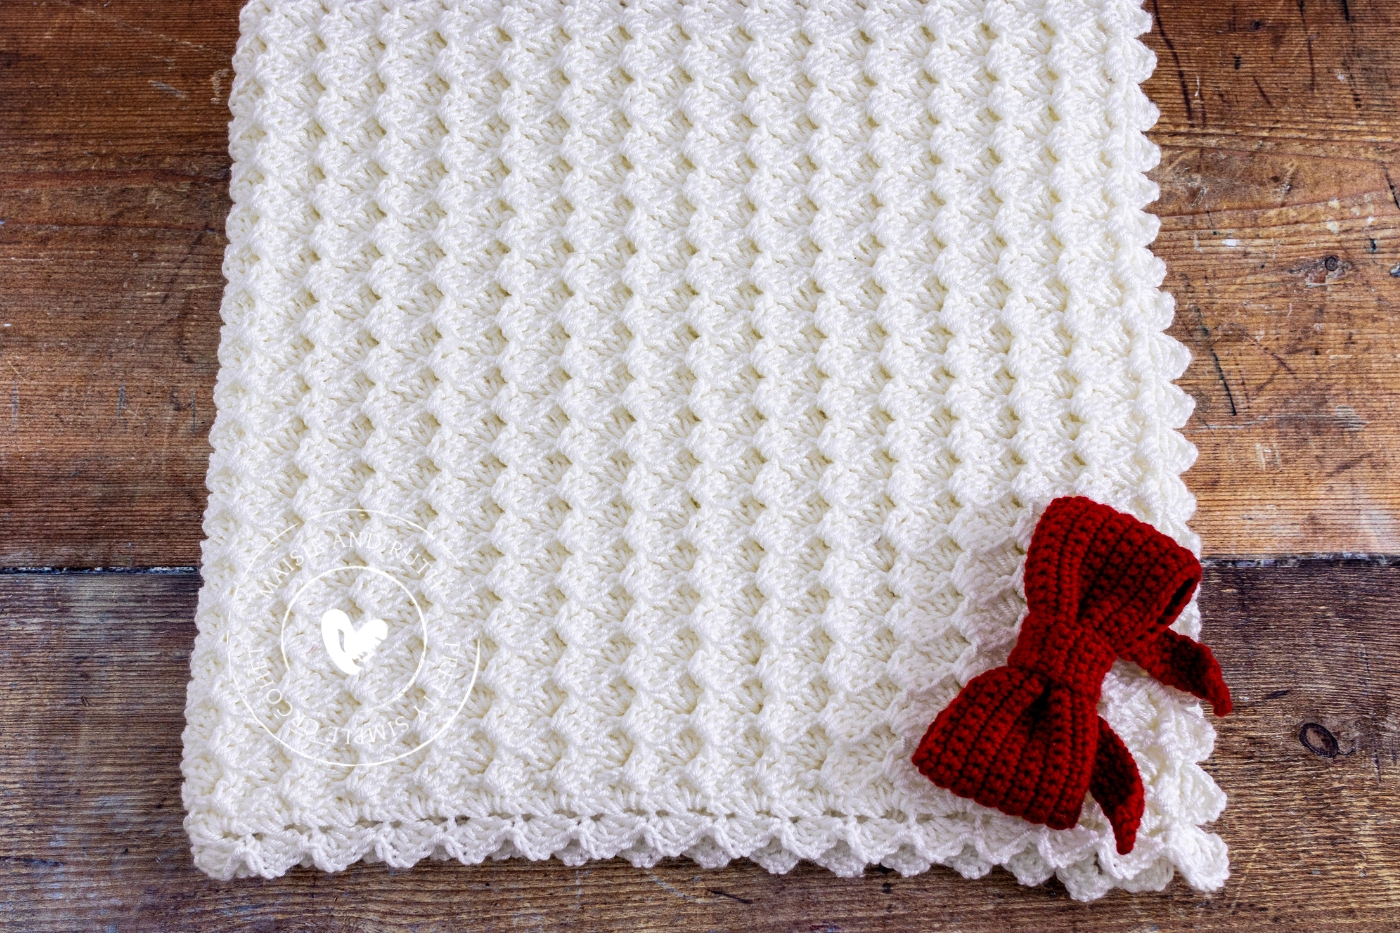 shell crochet baby blanket folded up